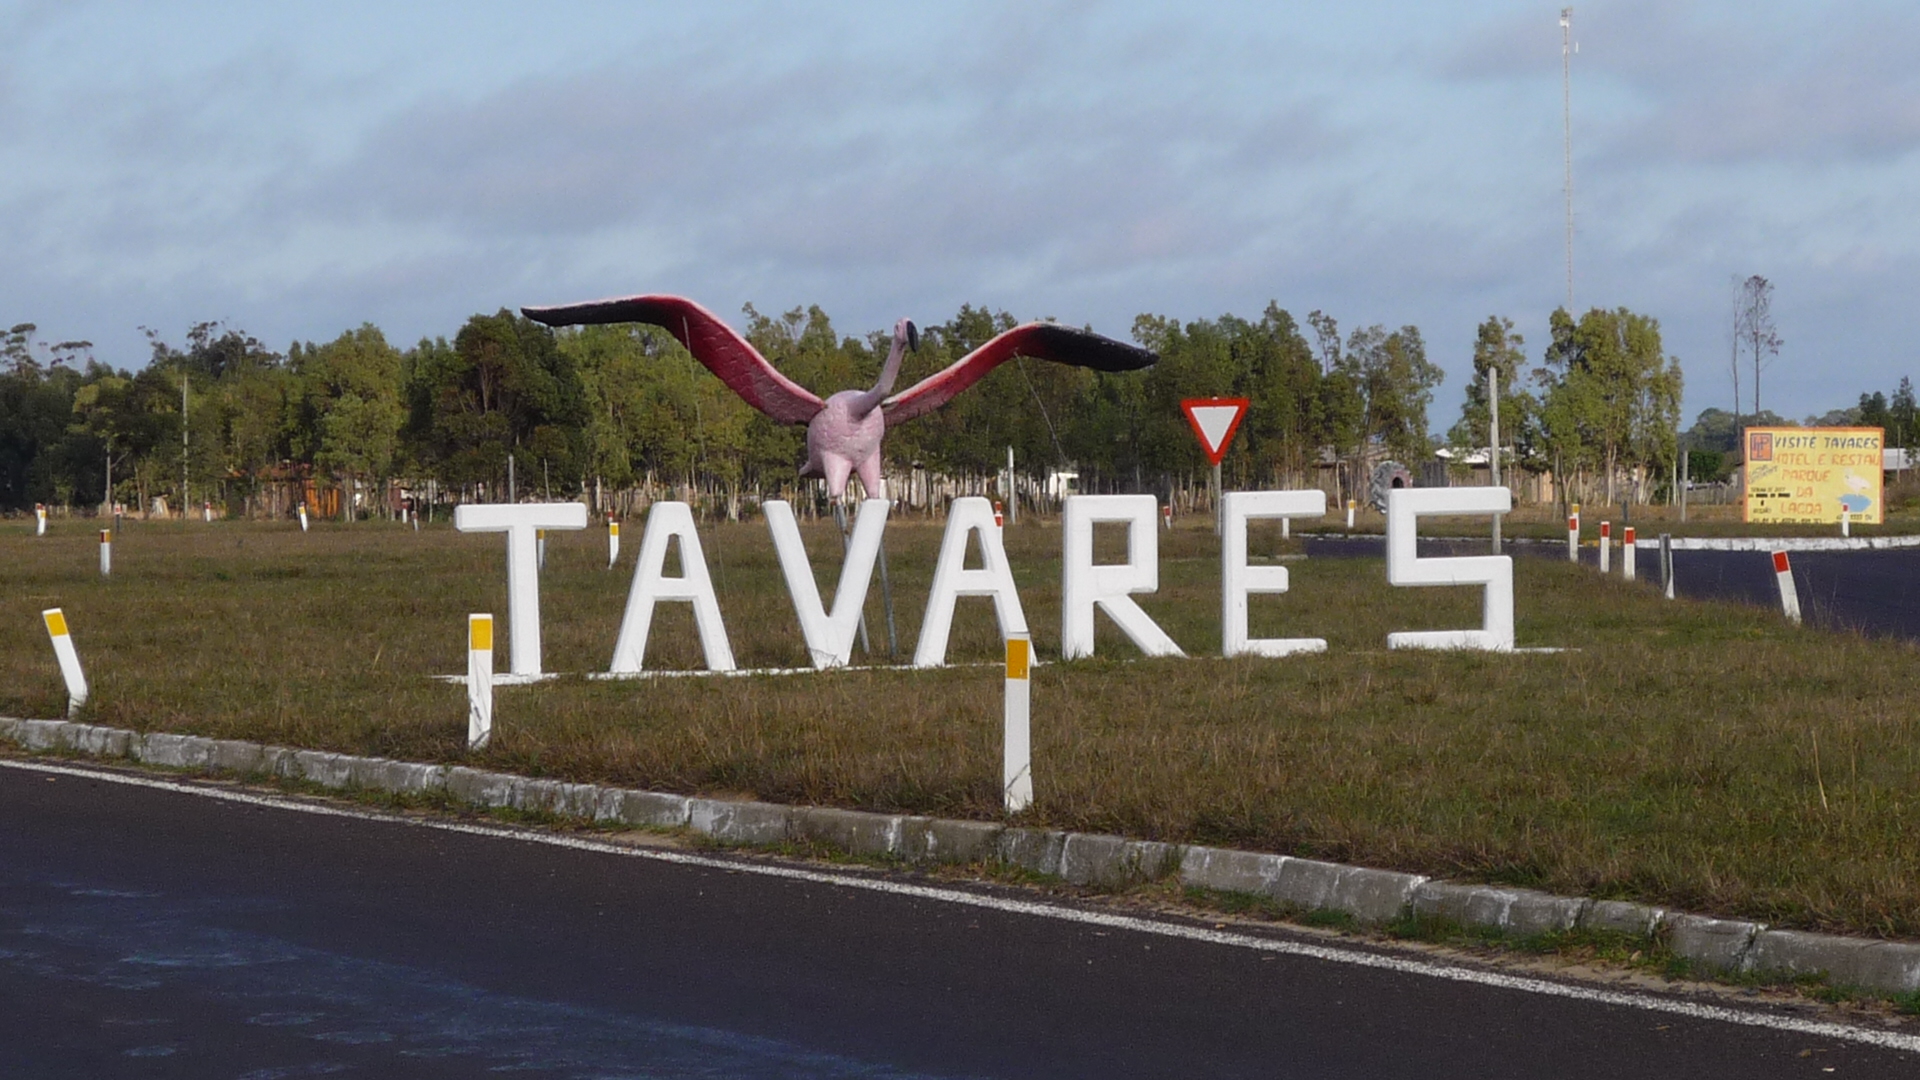 Conheça Tavares, a cidade dos faróis